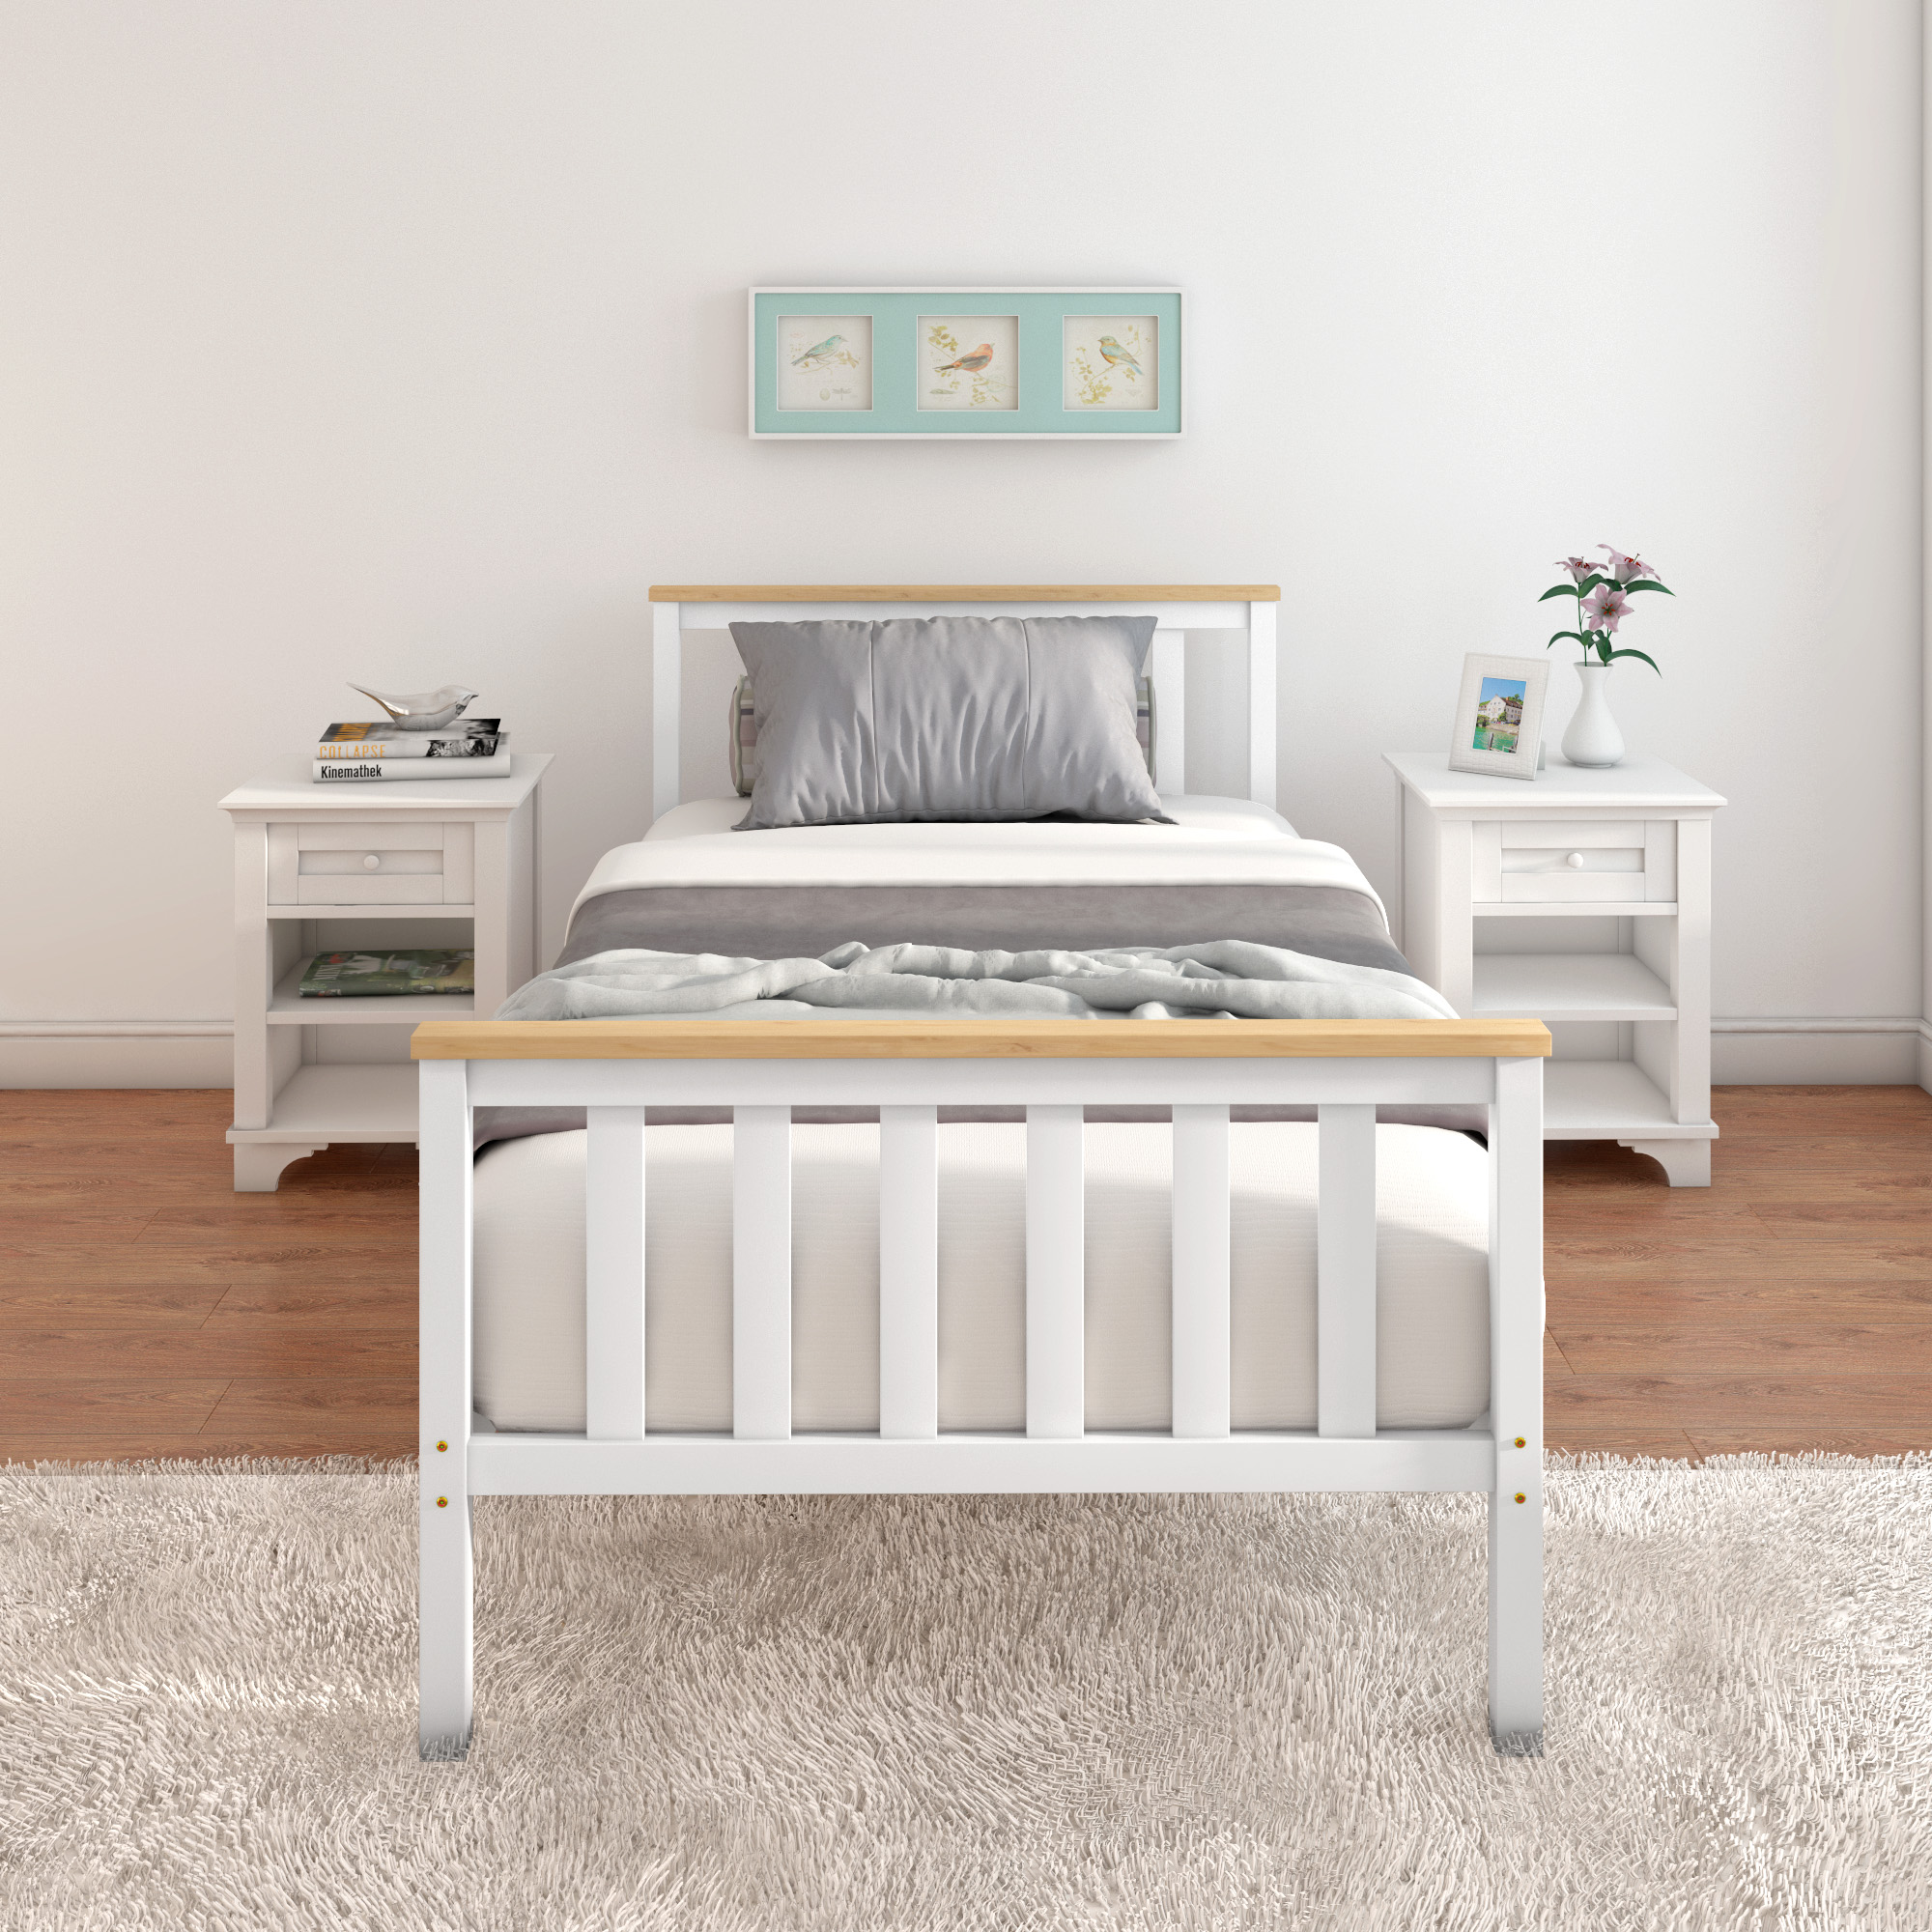 Solid Wood 3ft Single Wooden Bed Frame Bedroom Slatted Bedstead for Kid Adult UK eBay